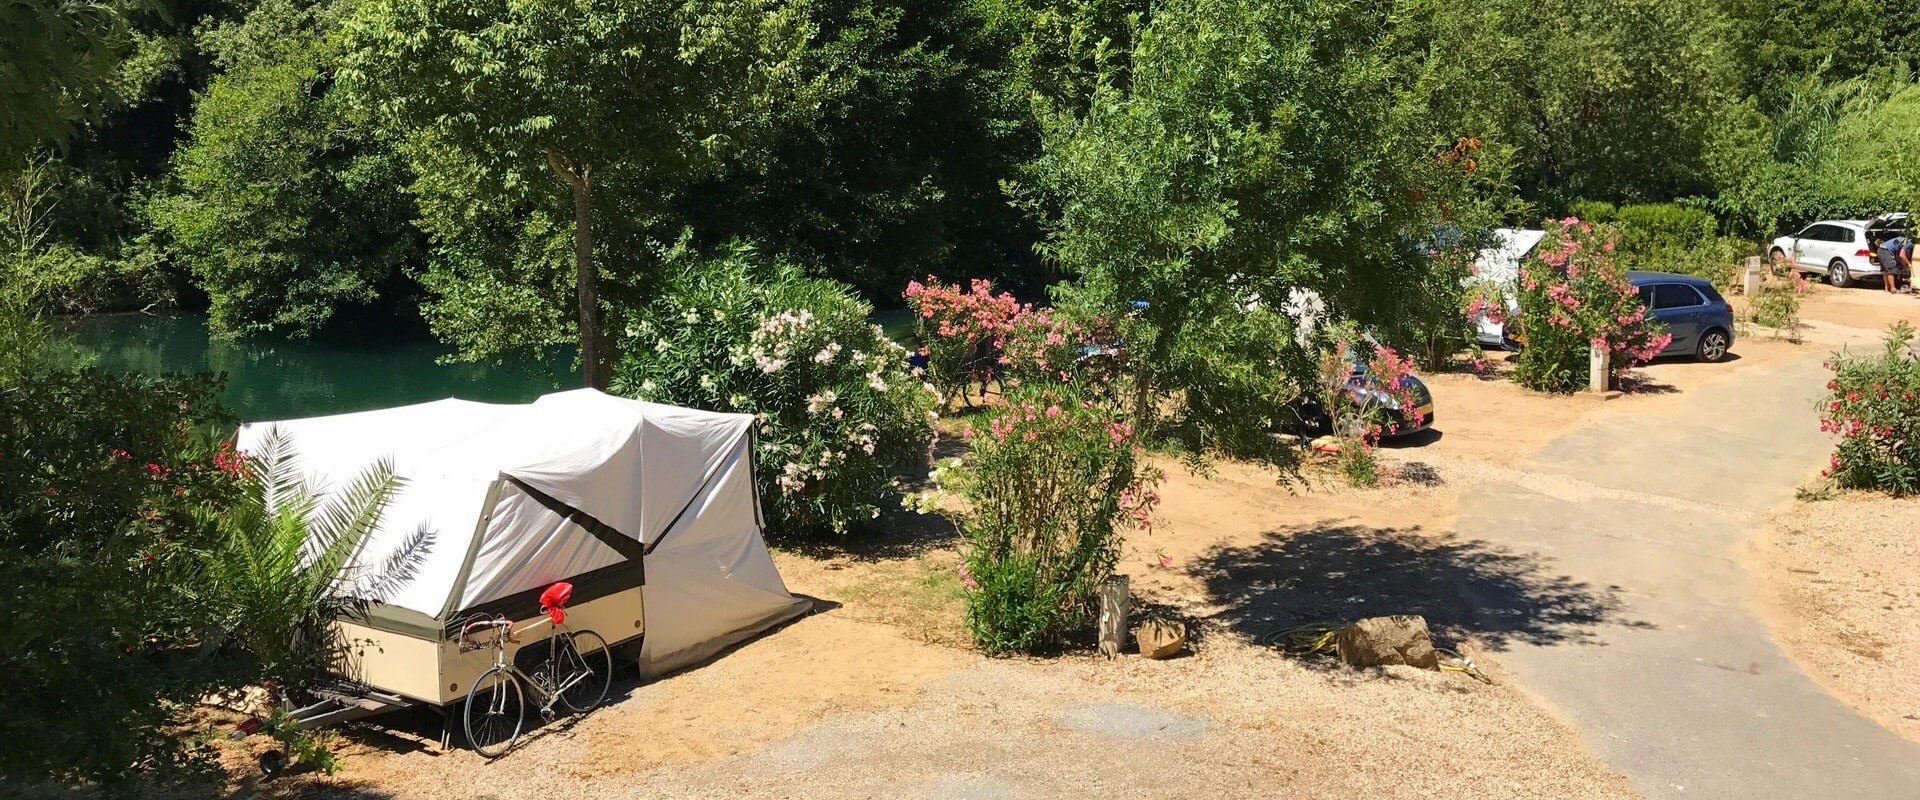 emplacement camping car caravane tente Auribeau-sur-Siagne